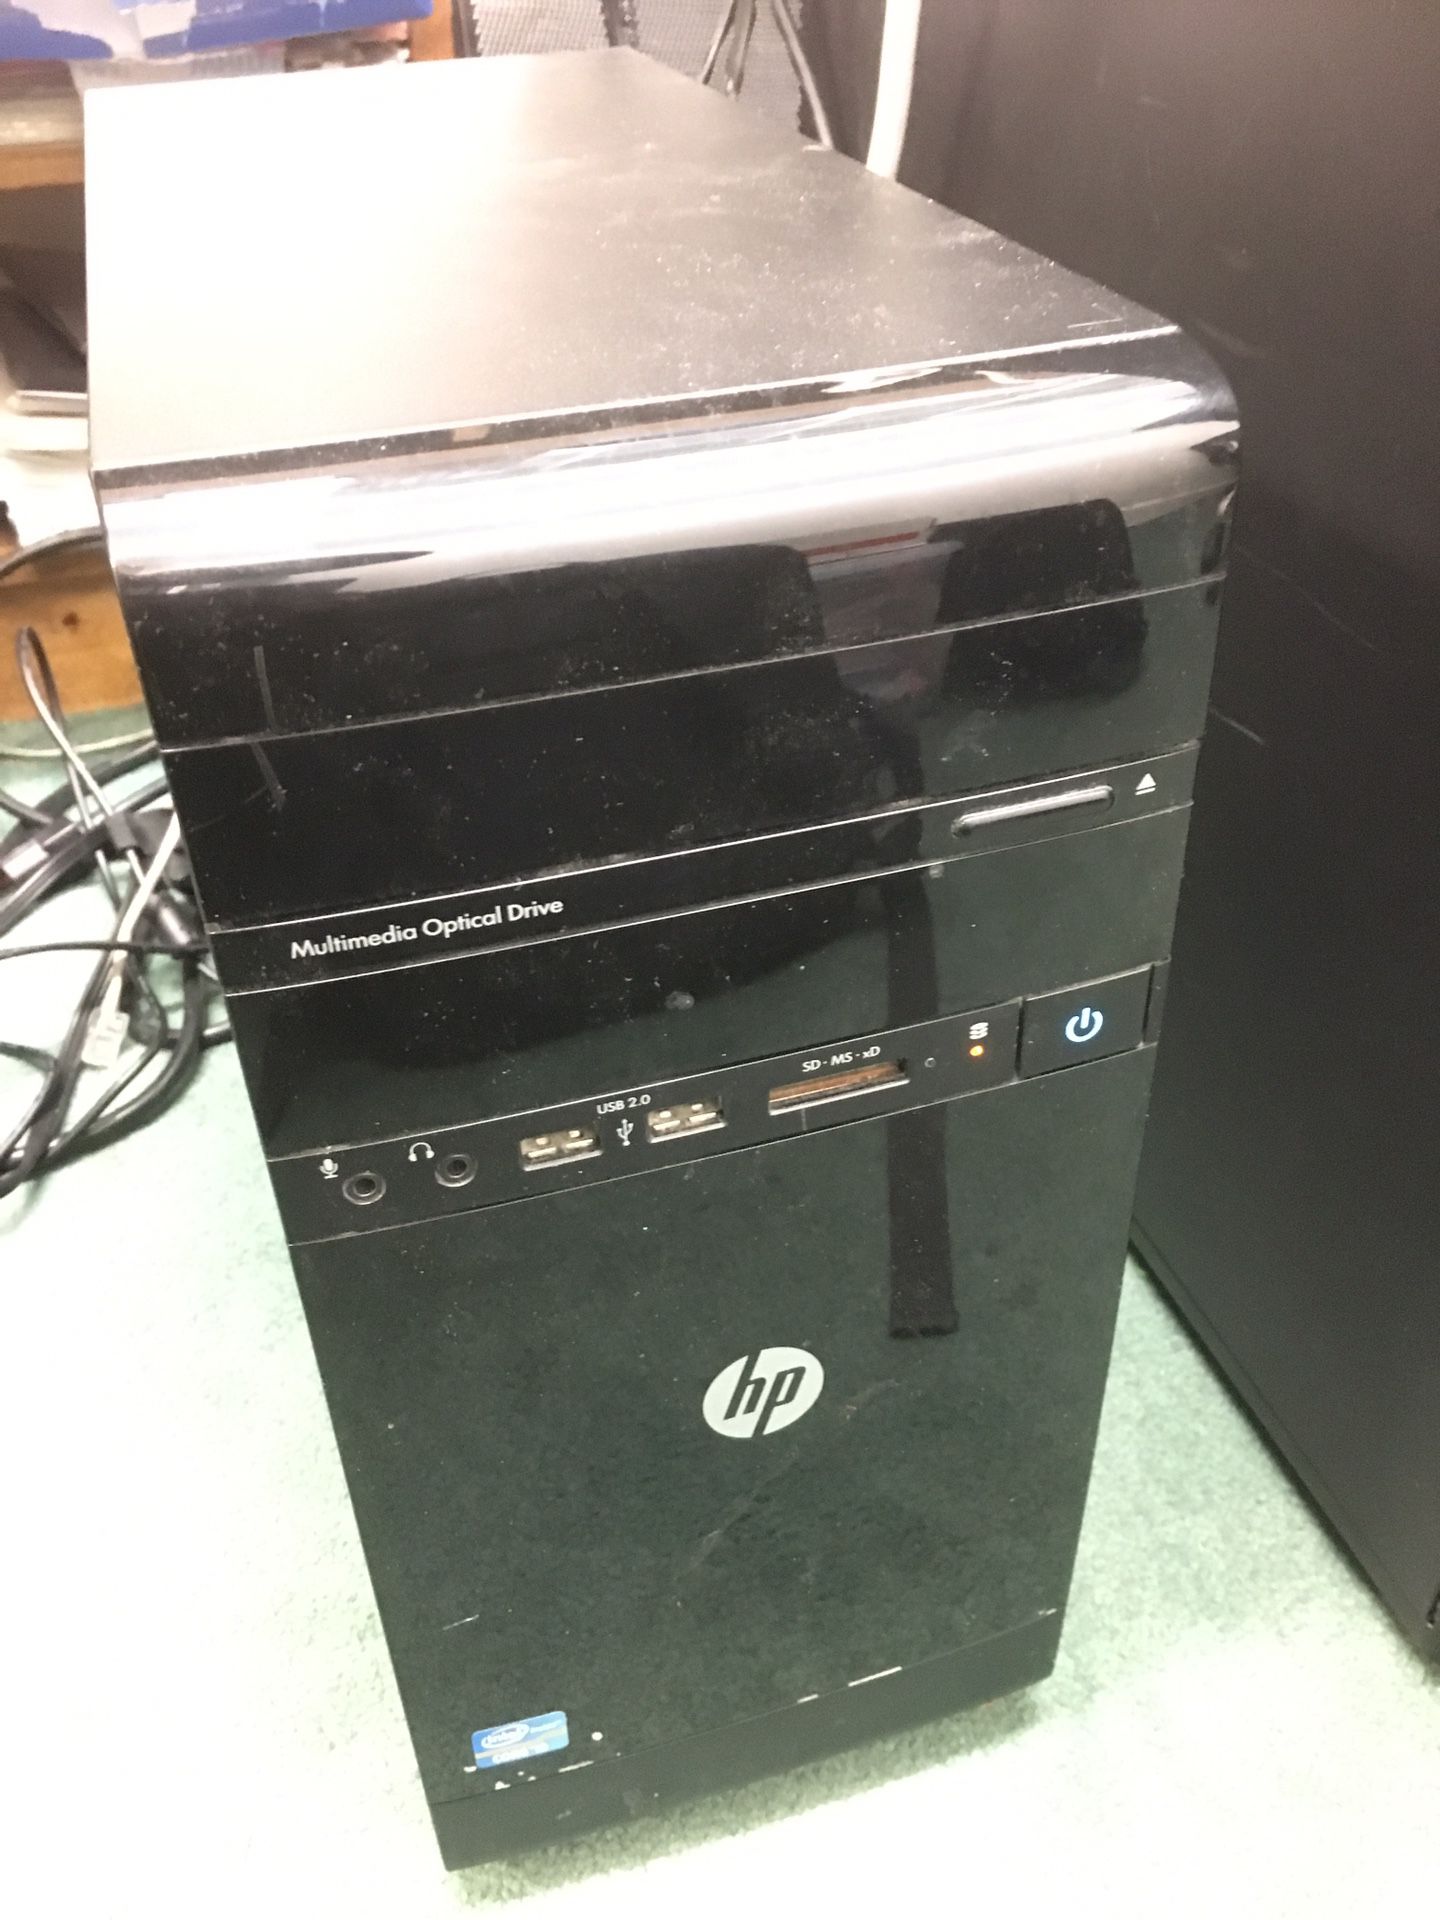 HP Desktop wondow 10 pro